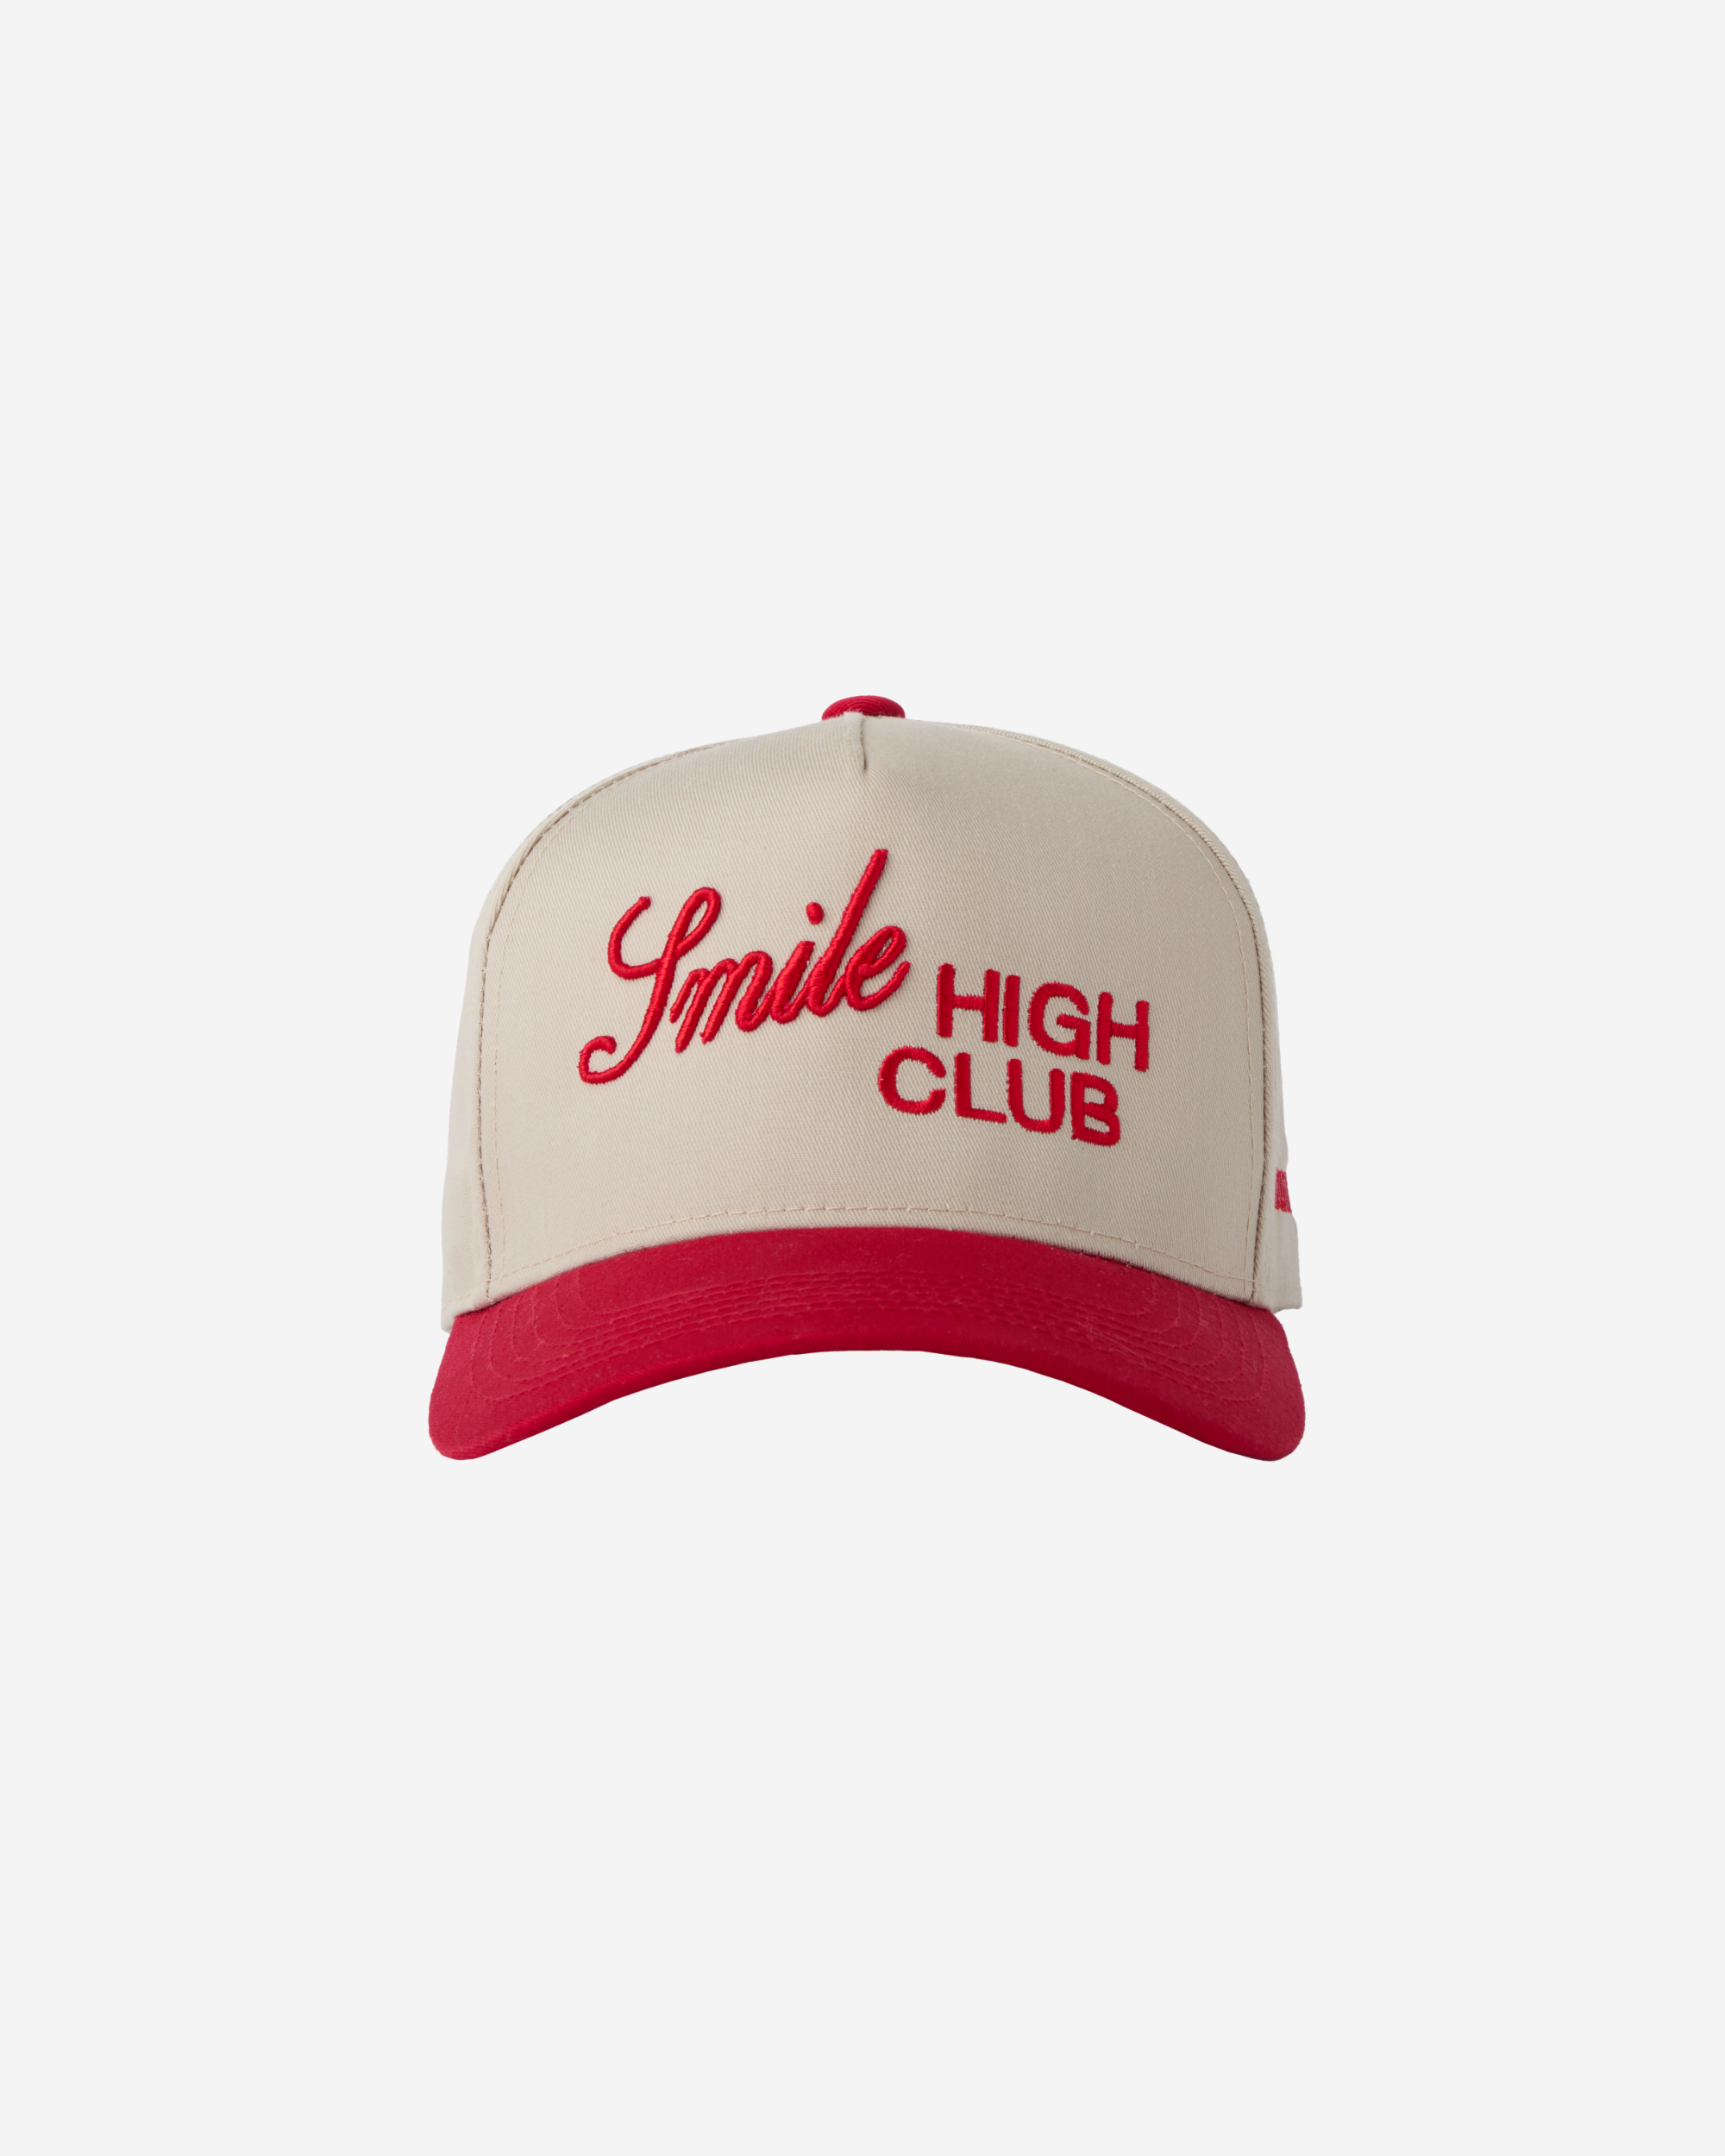 LG x BÉIS Smile High Club Hat